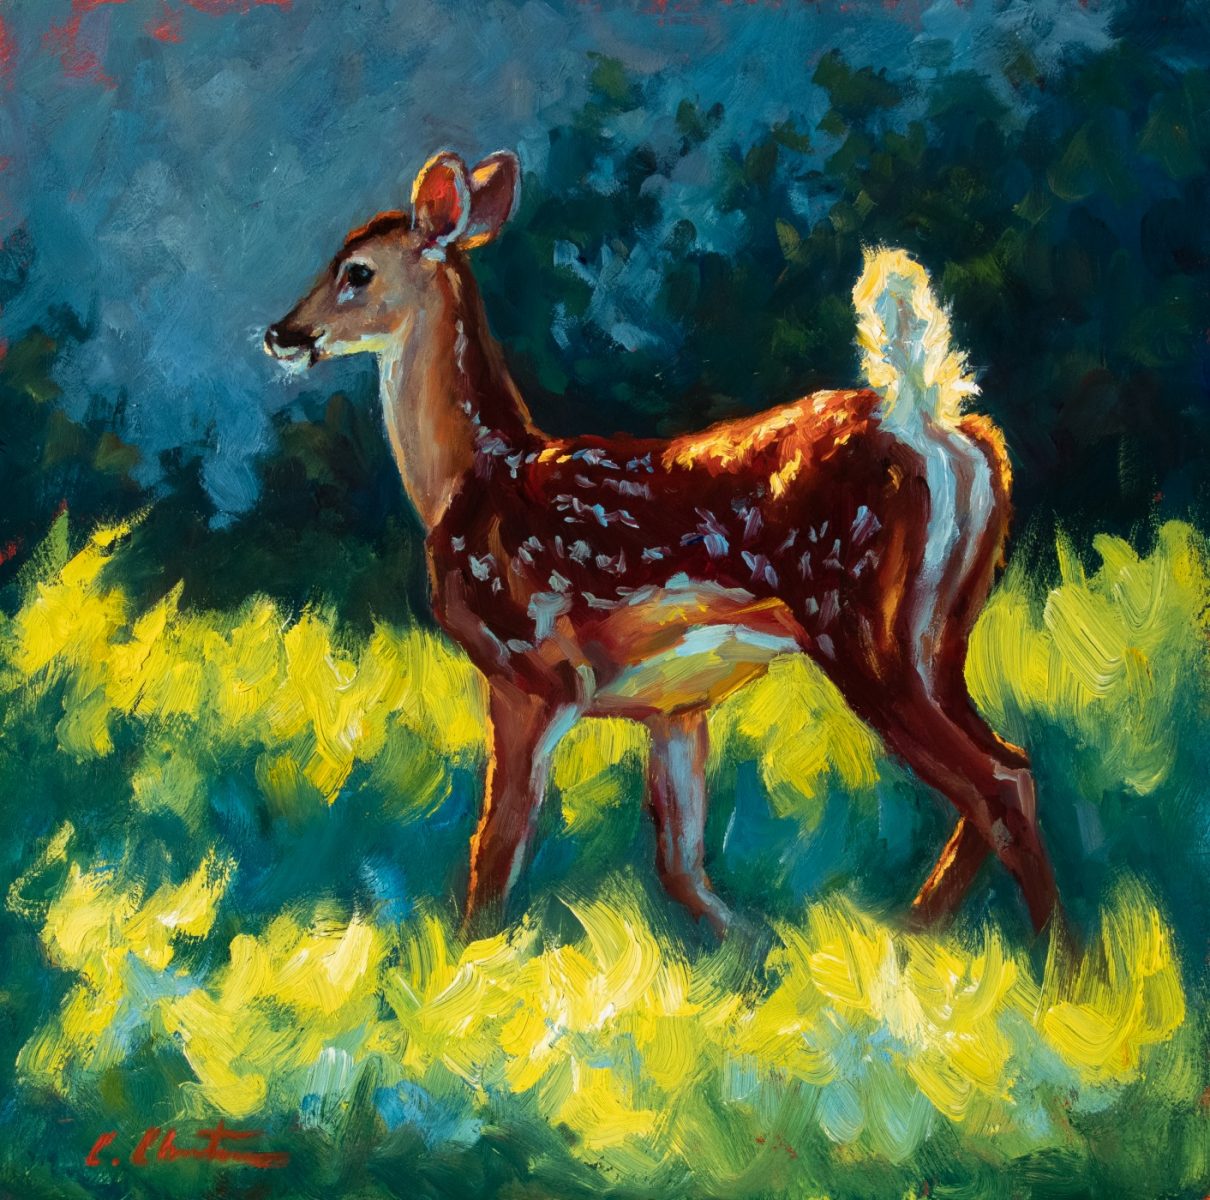 Oil painting of deer by Cheri Christensen